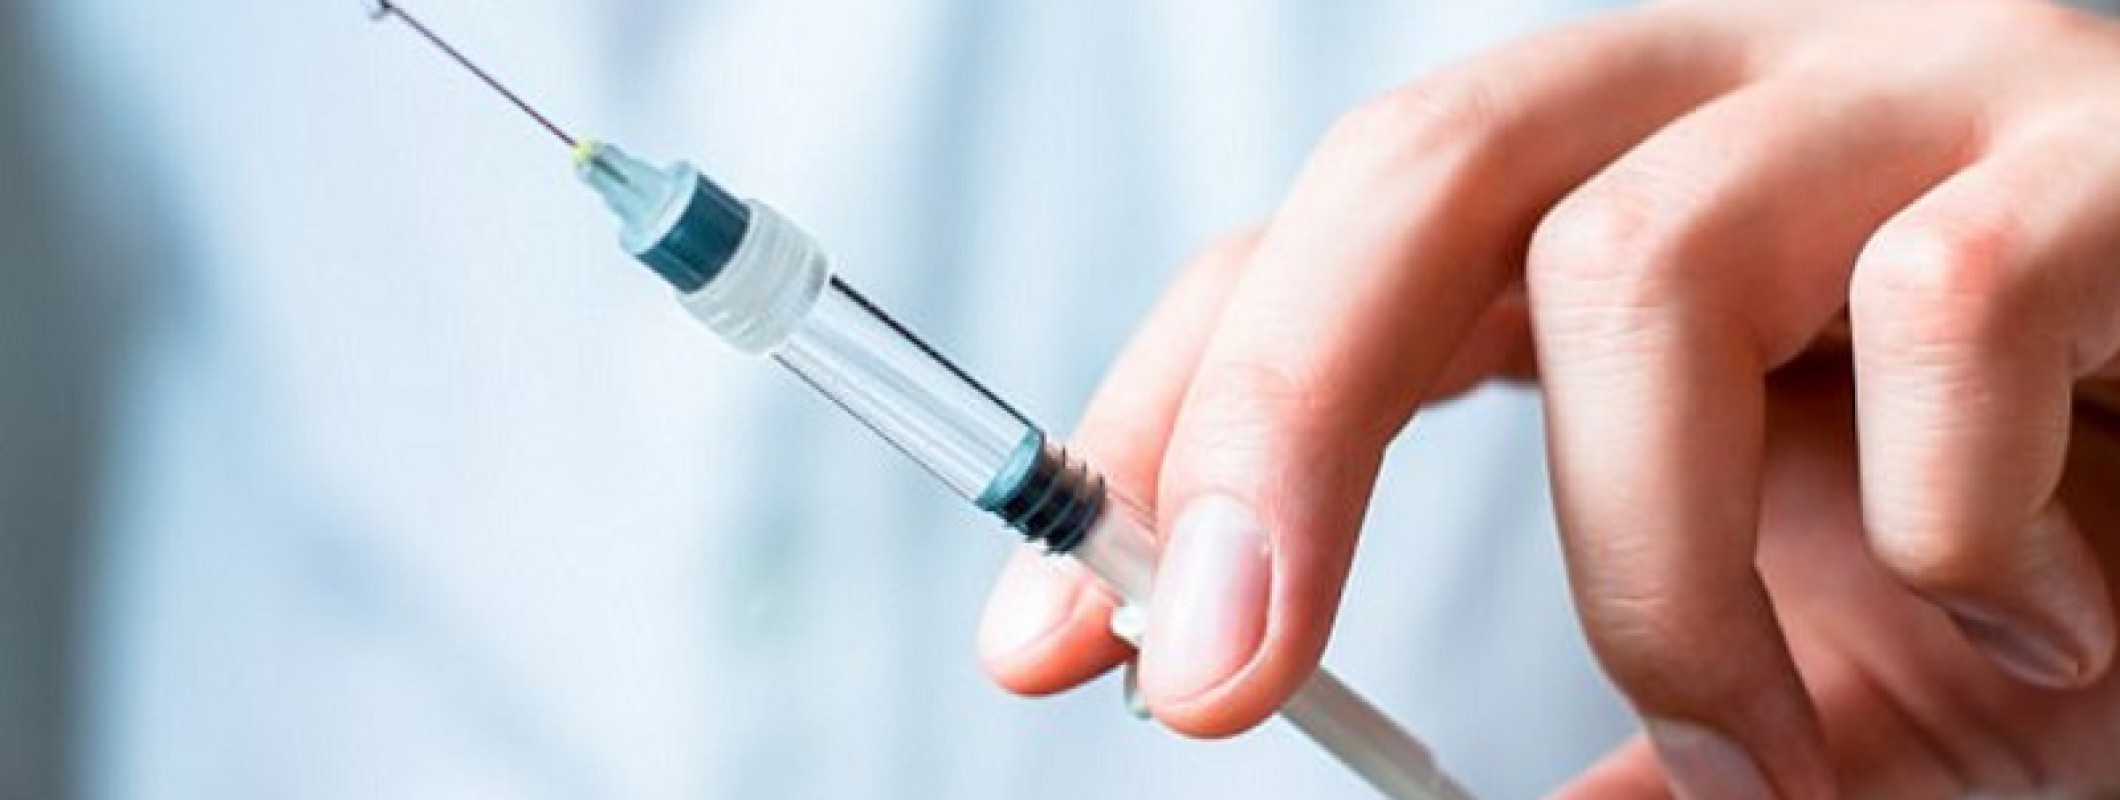 Tips Cara Menggunakan Suntik Insulin Yang Benar Bagi Penderita Diabetes